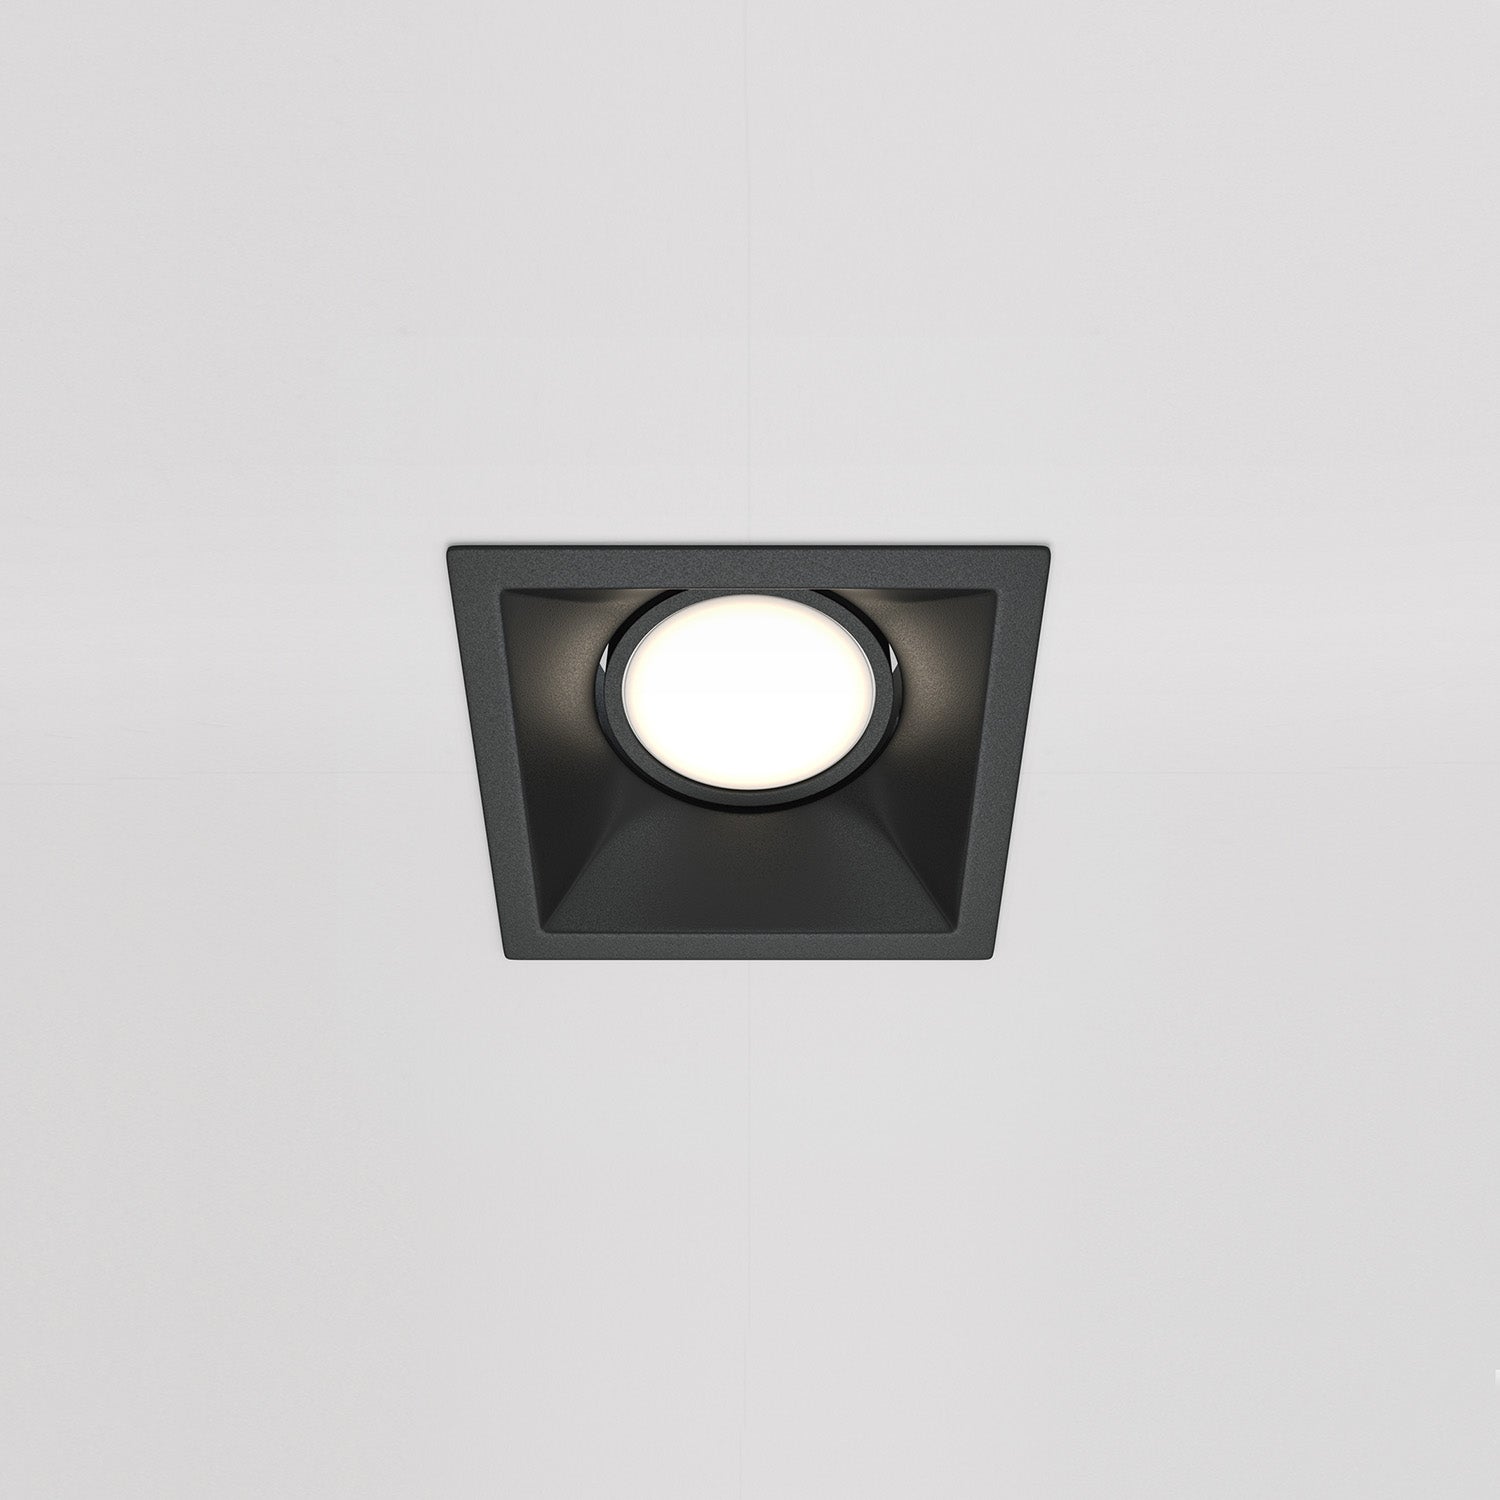 DOT – Quadratischer Design-Einbaustrahler, schwarz oder weiß, 80 mm